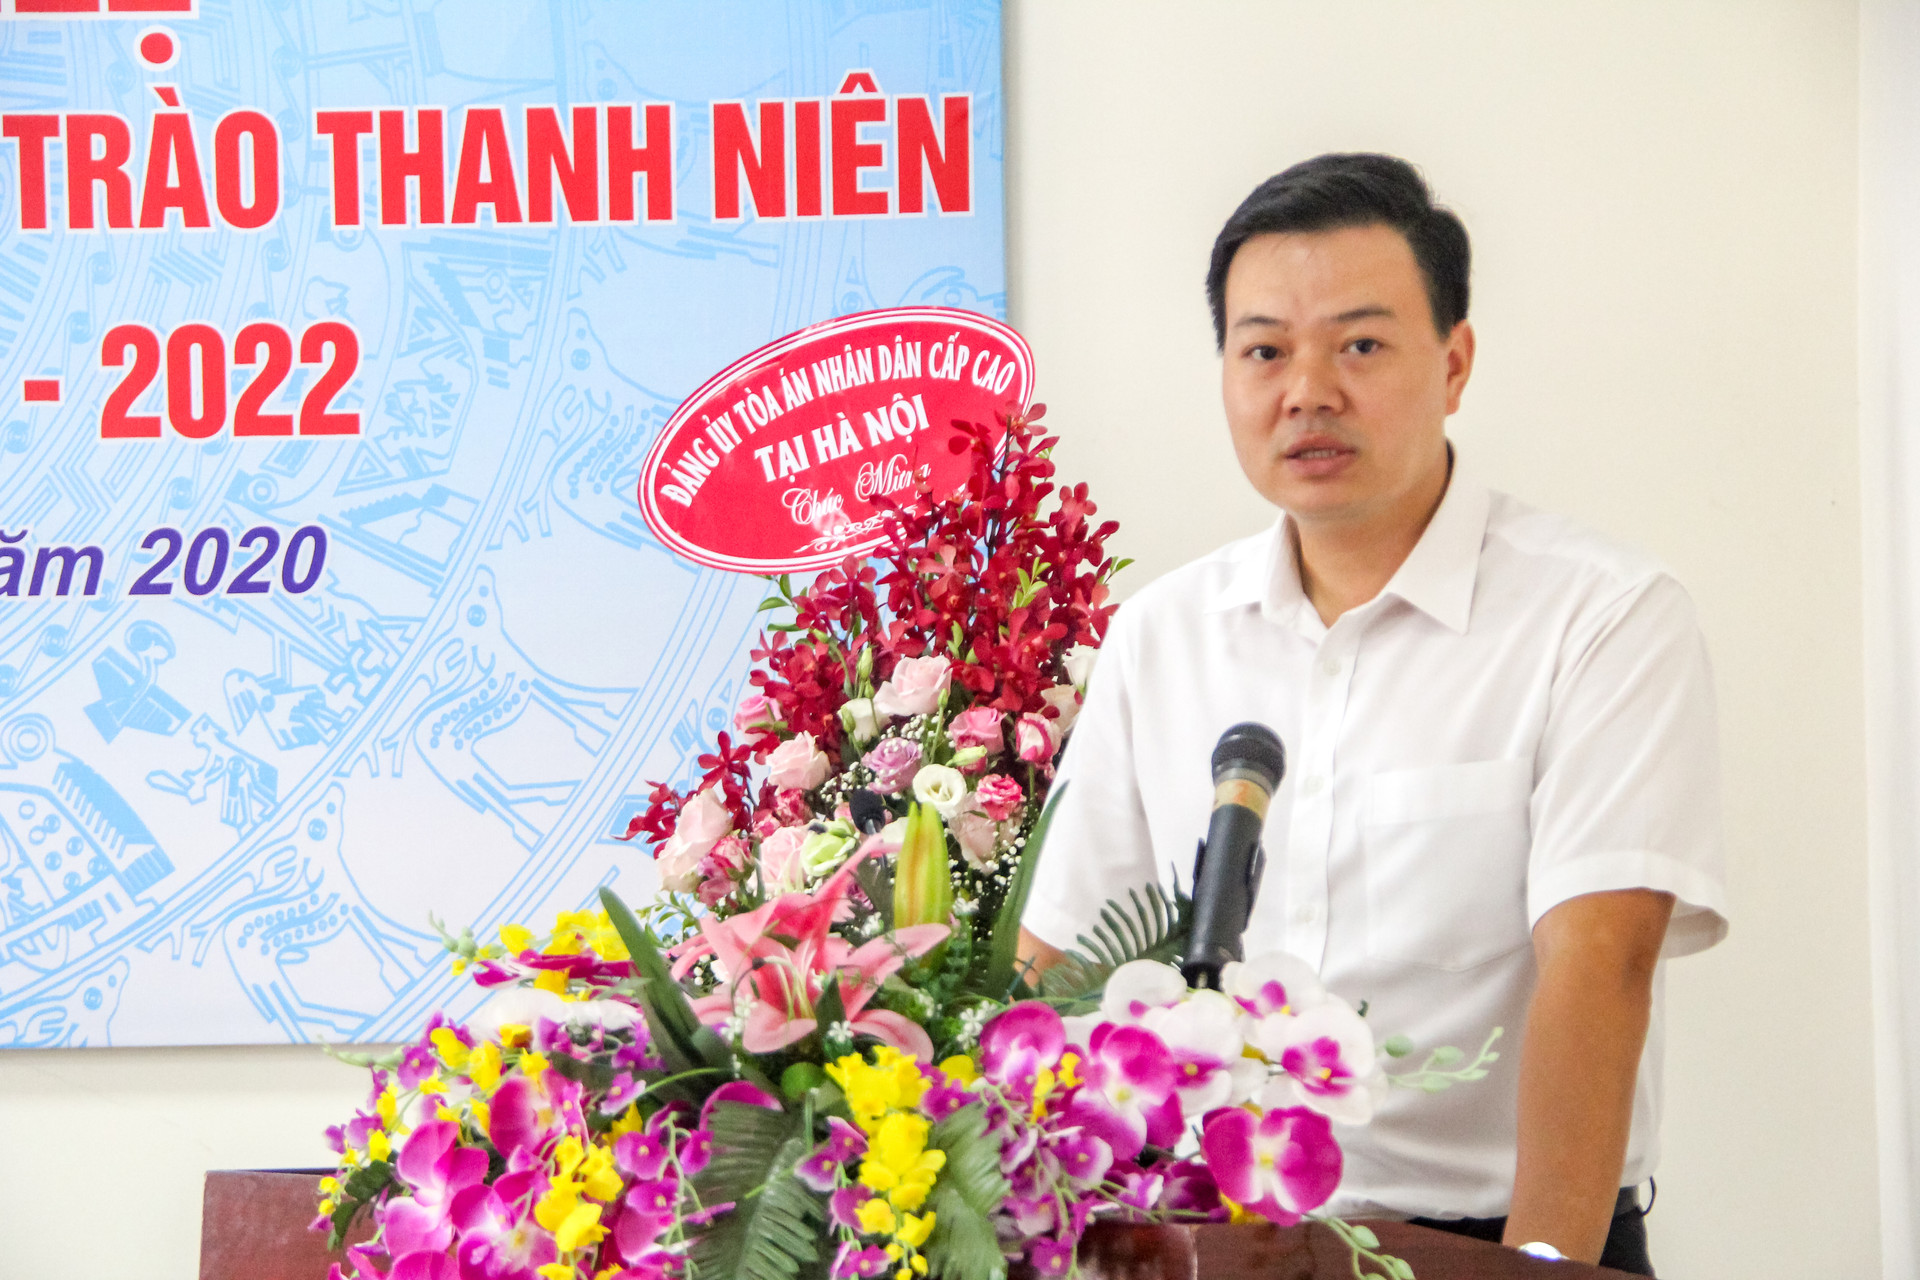 Hội nghị sơ kết công tác đoàn, phong trào thanh niên giữa nhiệm kỳ TAND cấp cao tại Hà Nội